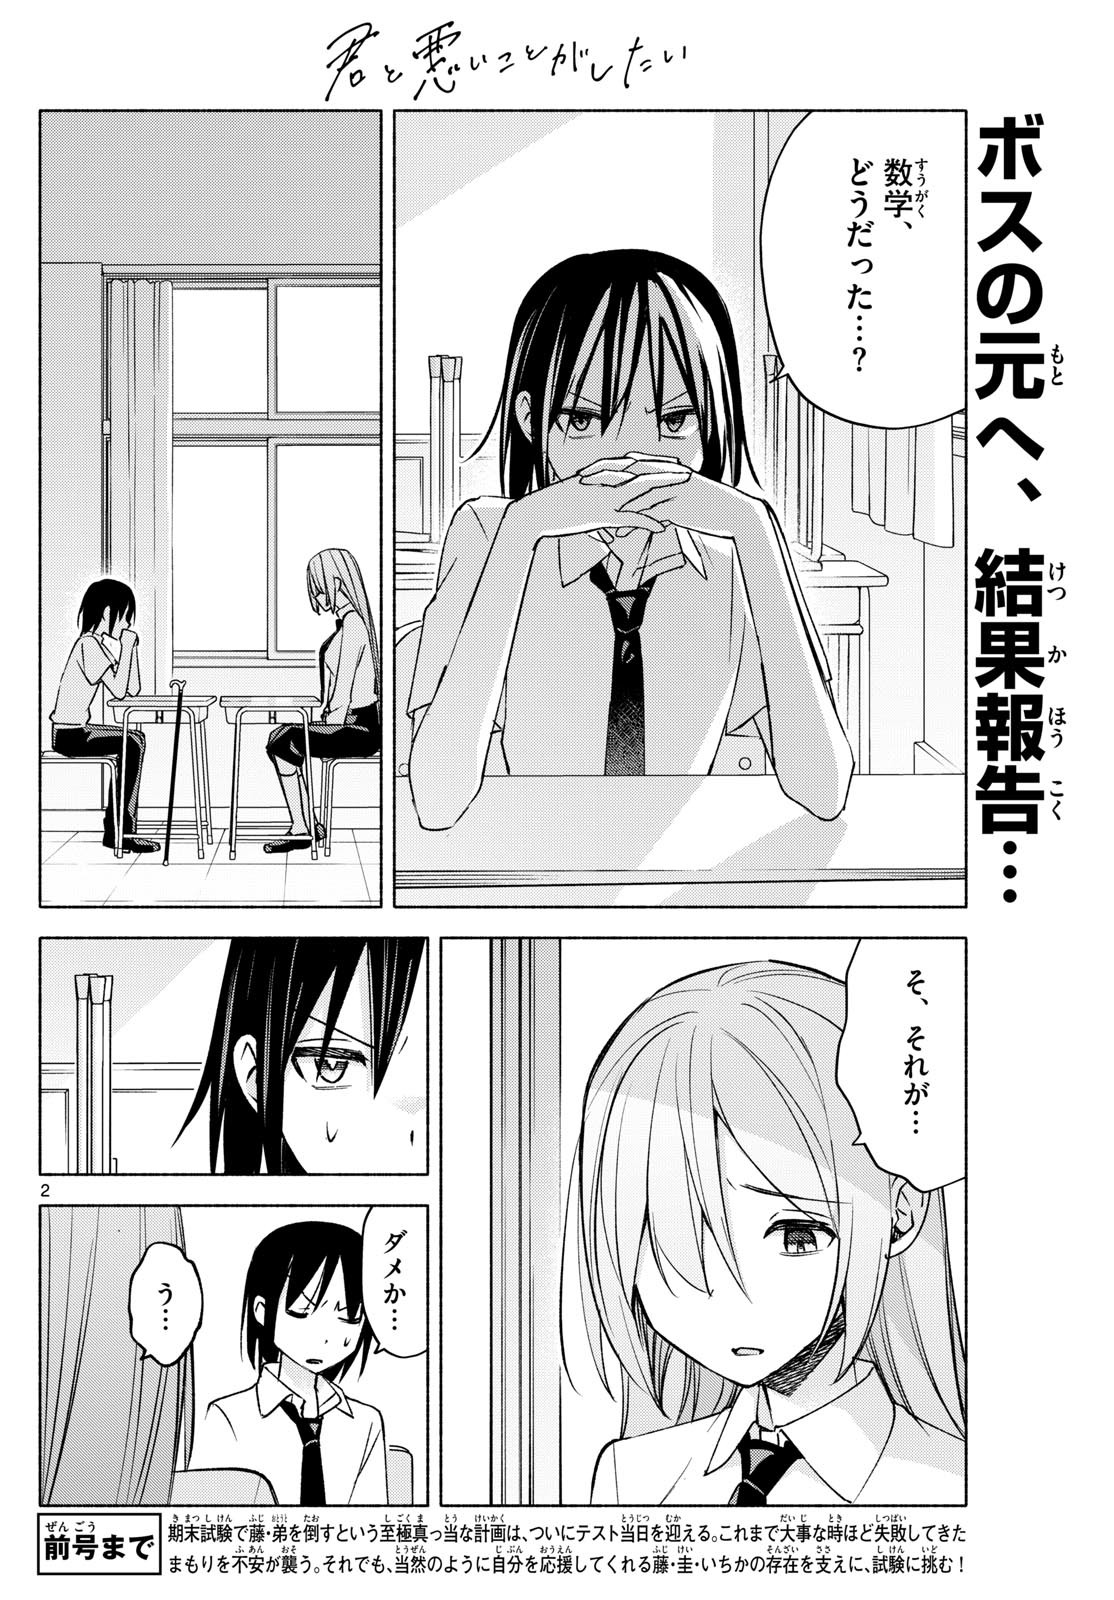 Kimi to Warui Koto ga Shitai - Chapter 037 - Page 2